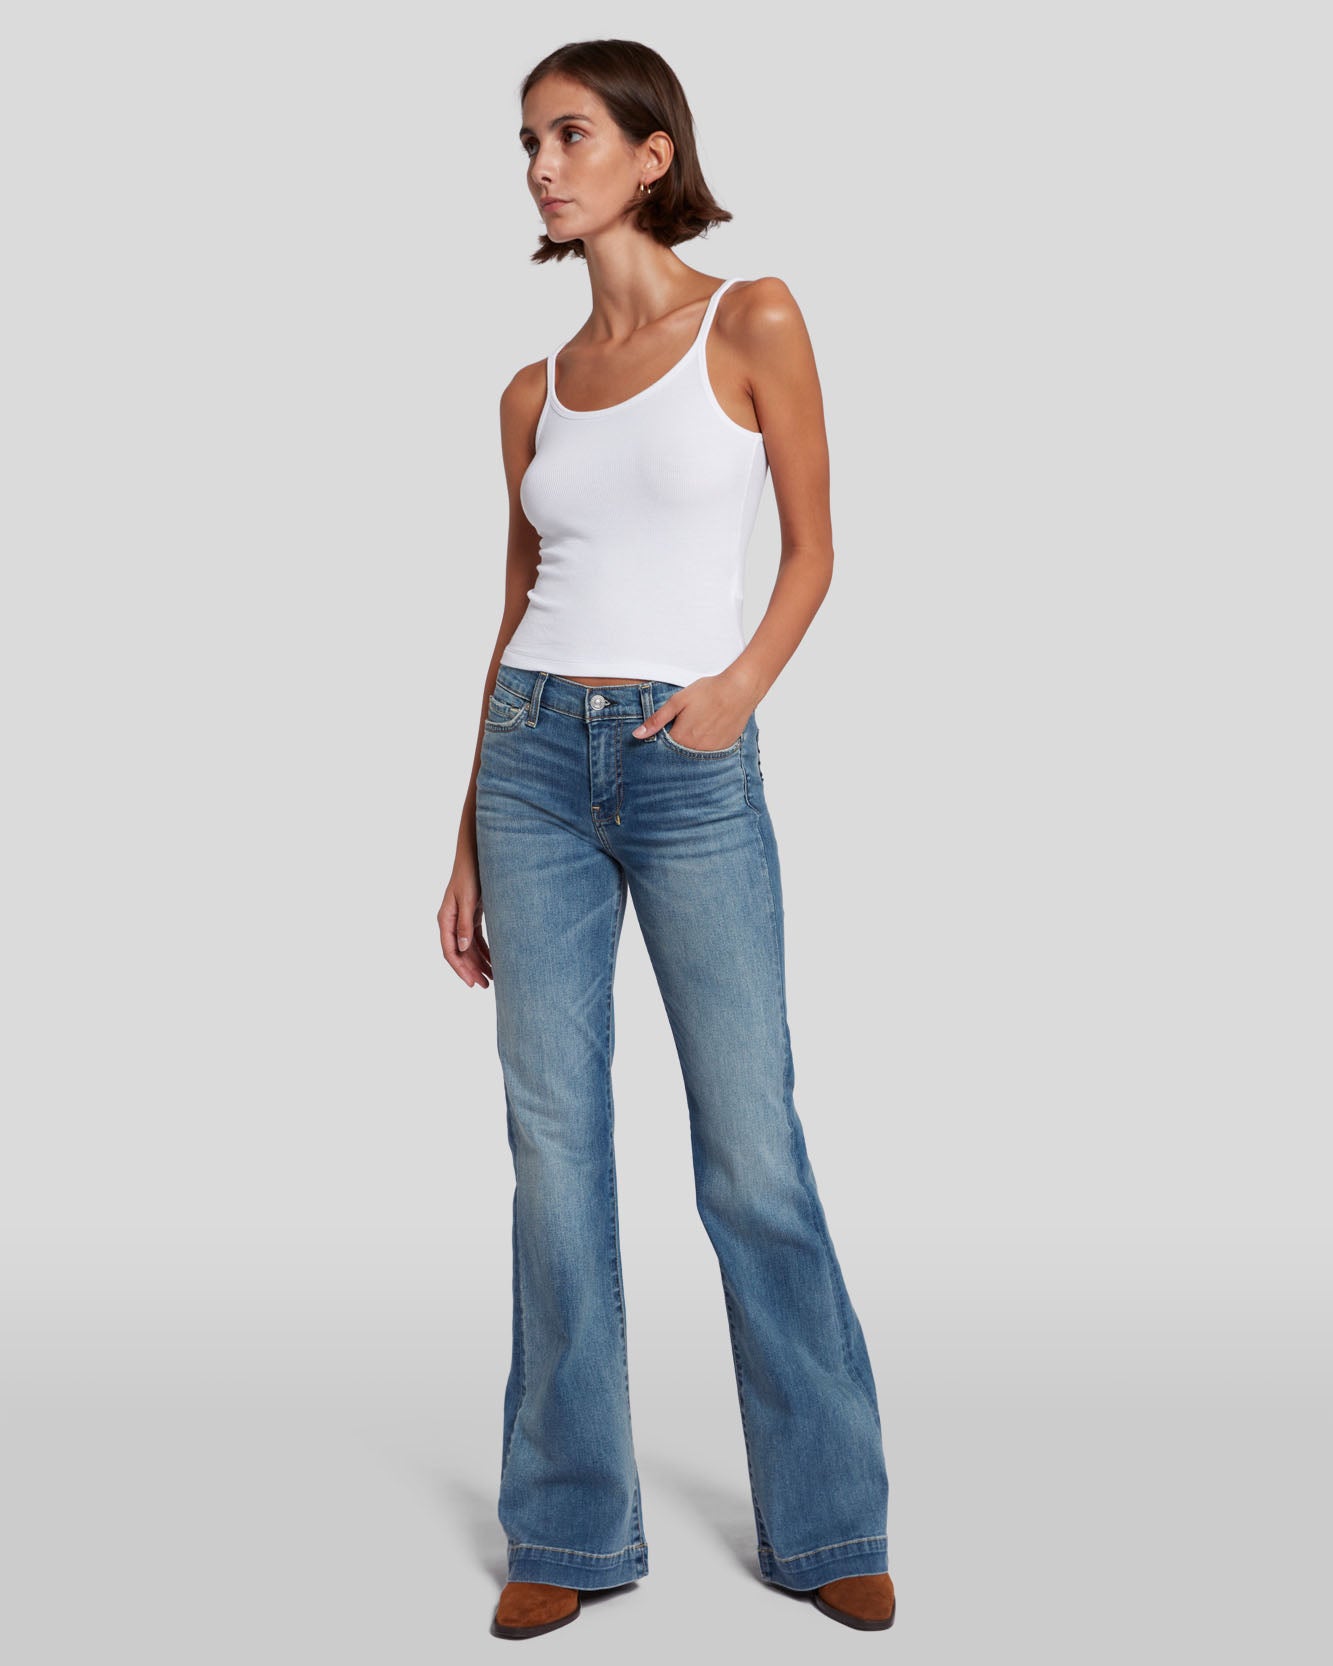 Best Selling Women's Jeans